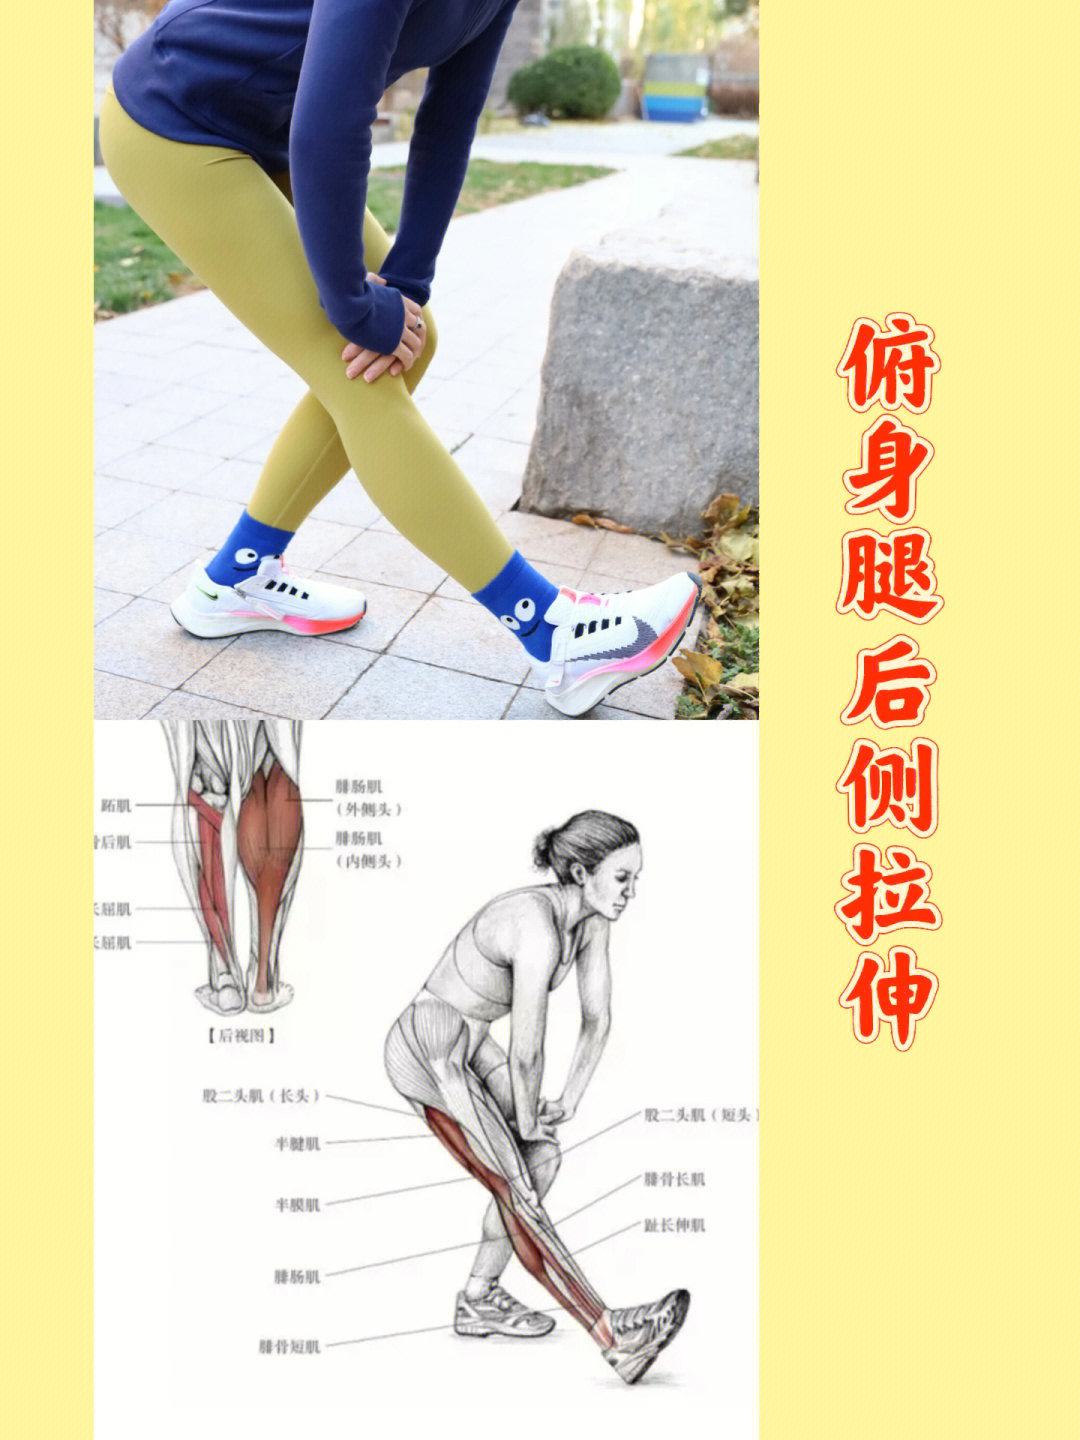 不仅大腿后群有明显拉伸感,还可以拉伸小腿的腓肠肌